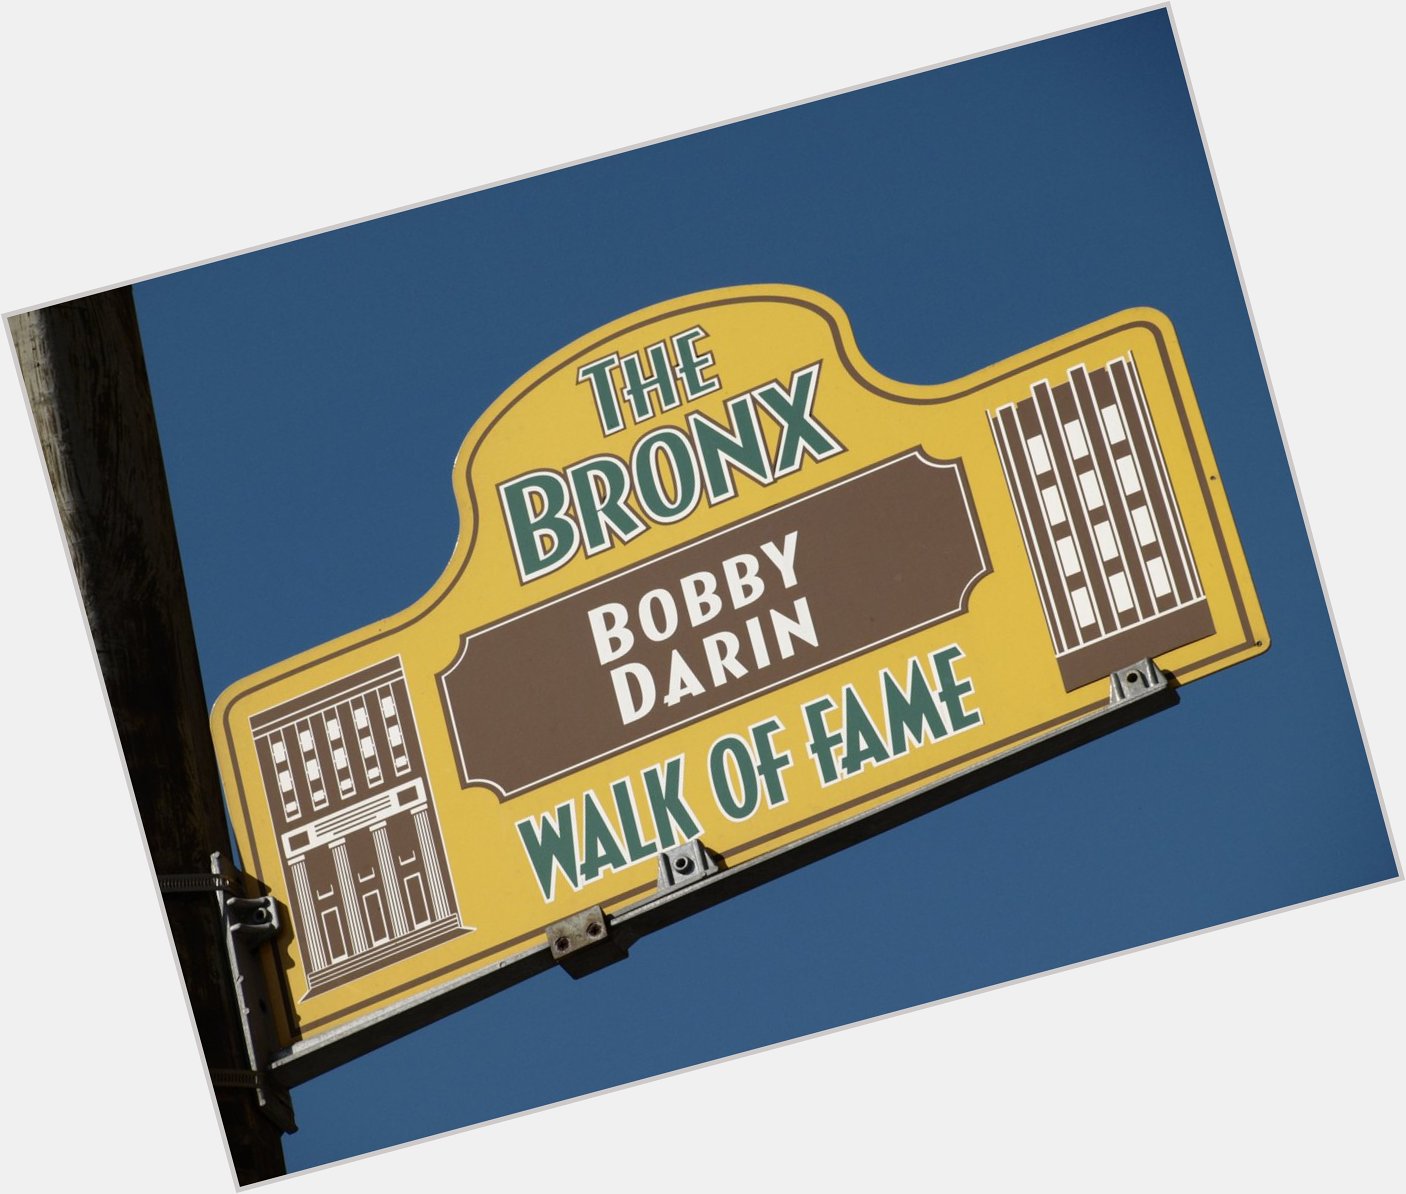 Happy Birthday 2004 Bronx Walk of Fame Inductee Bobby Darin! 